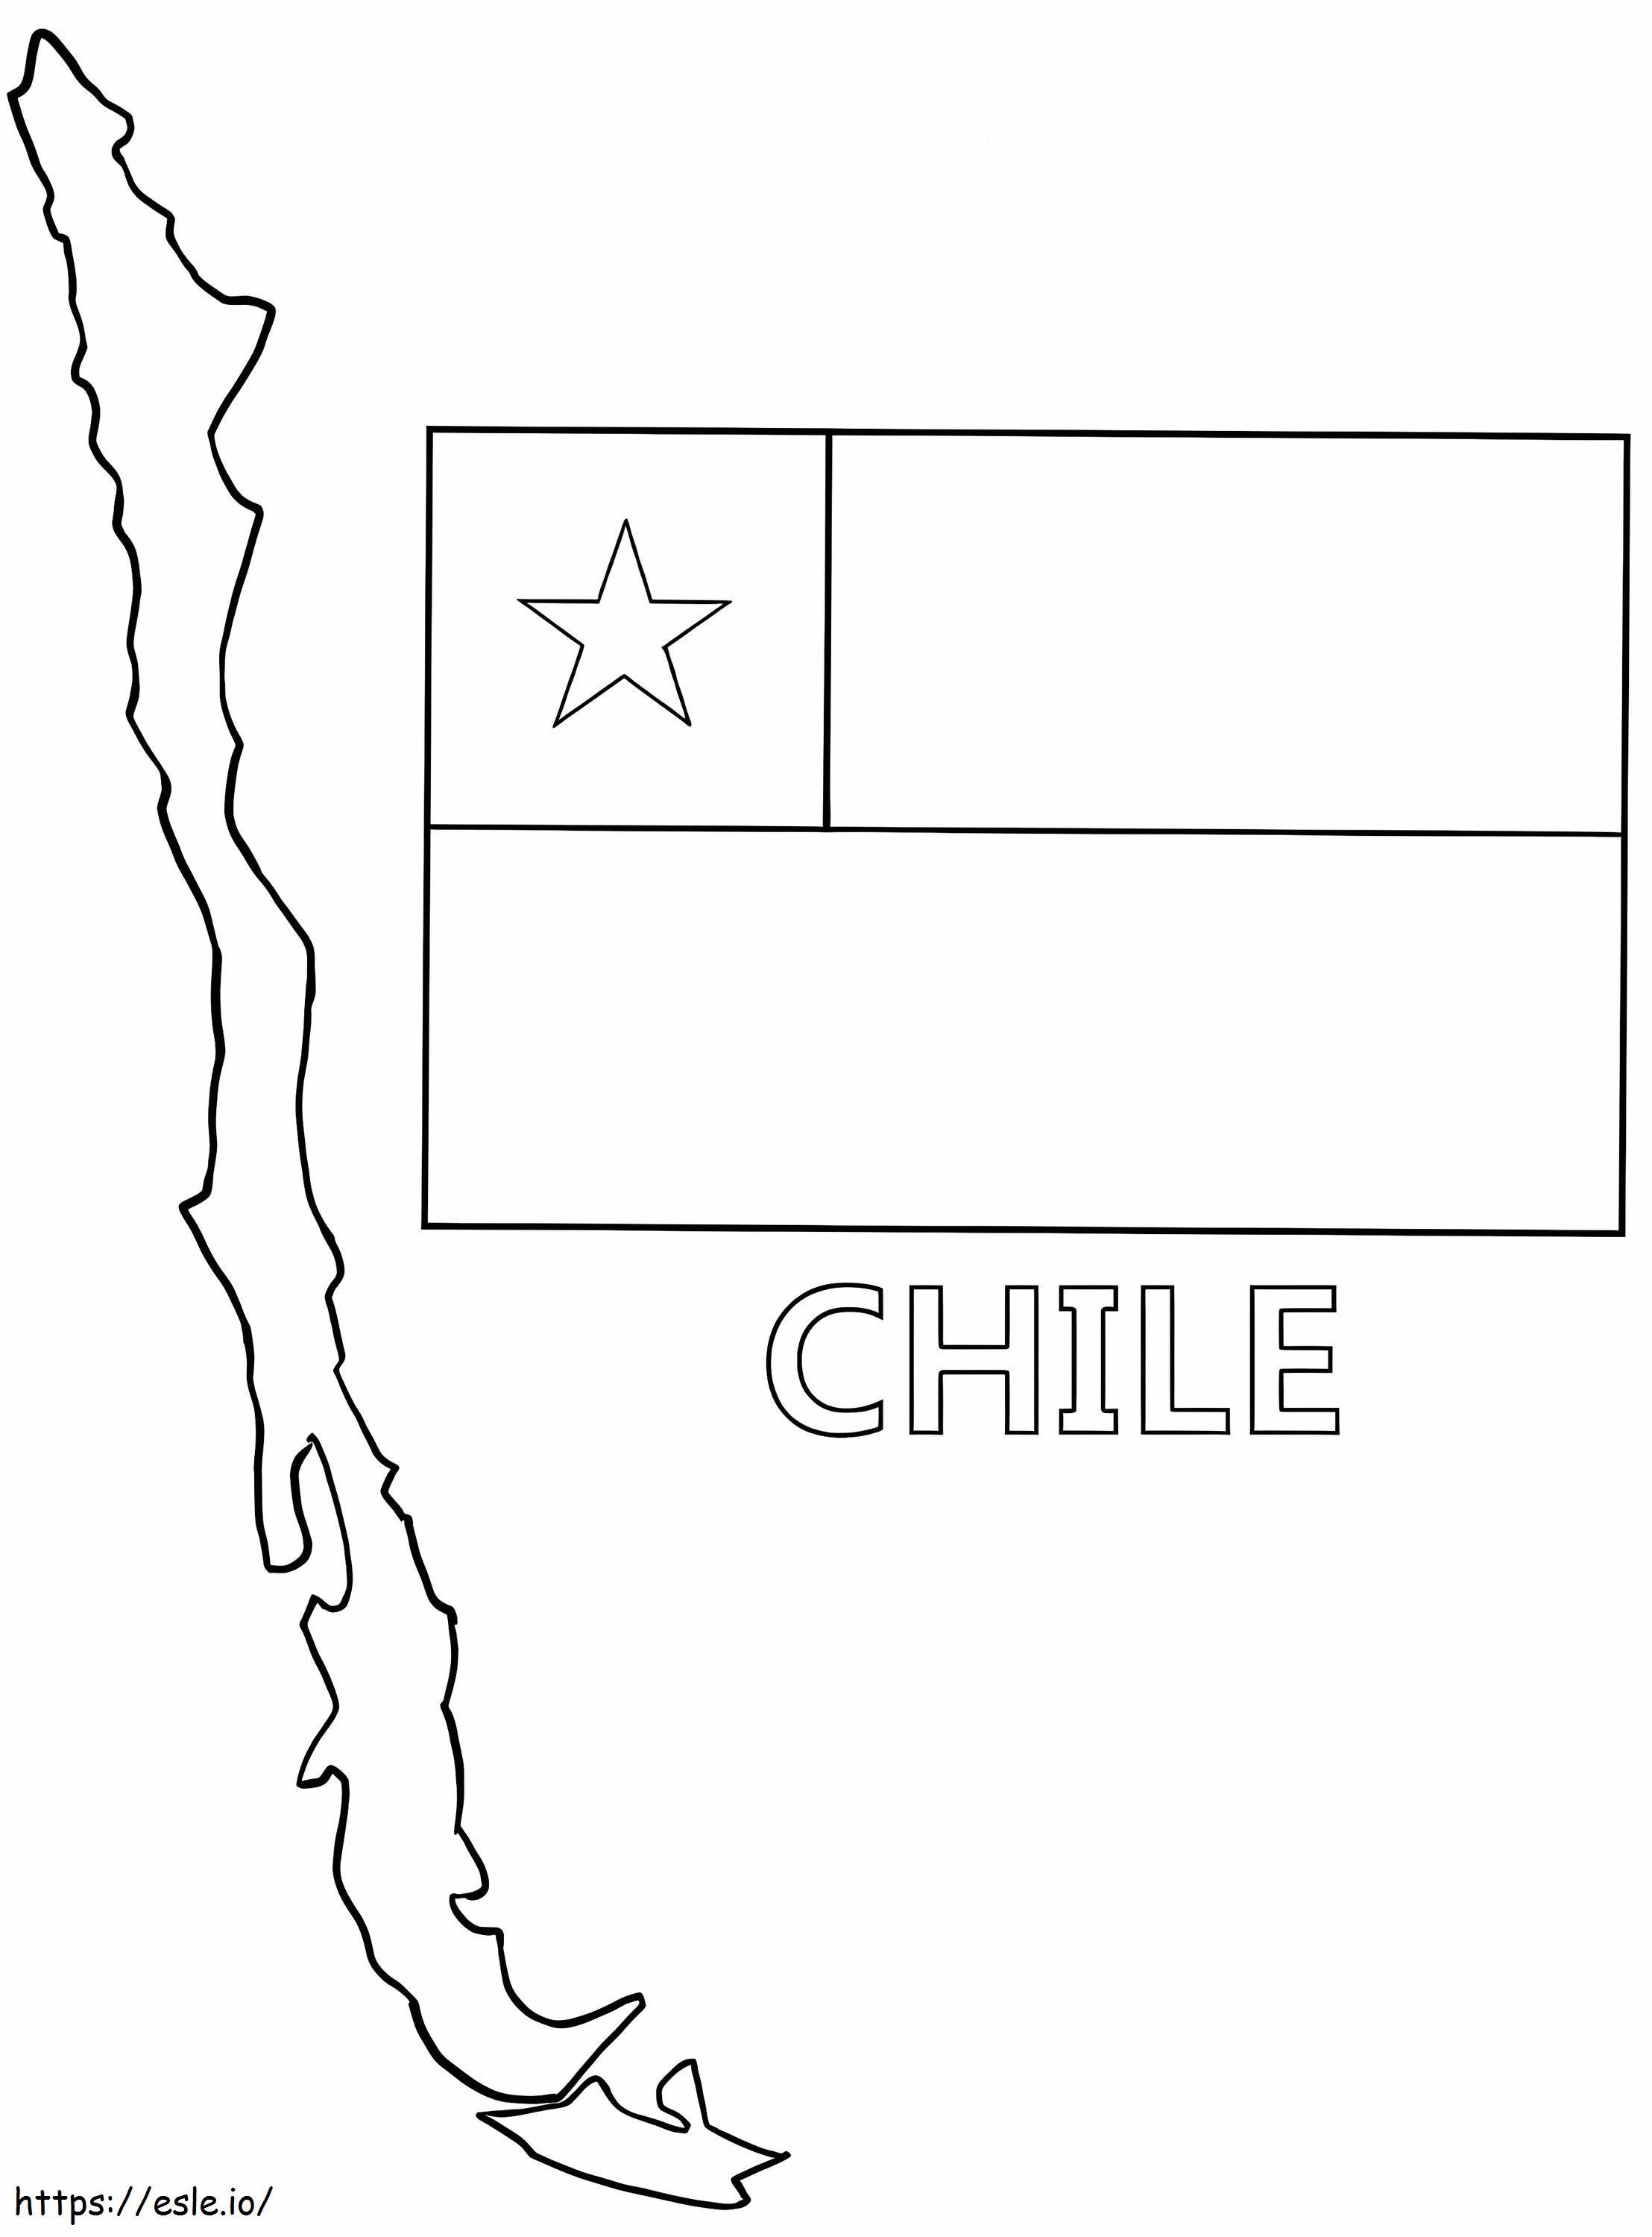 Peta dan Bendera Chili Gambar Mewarnai